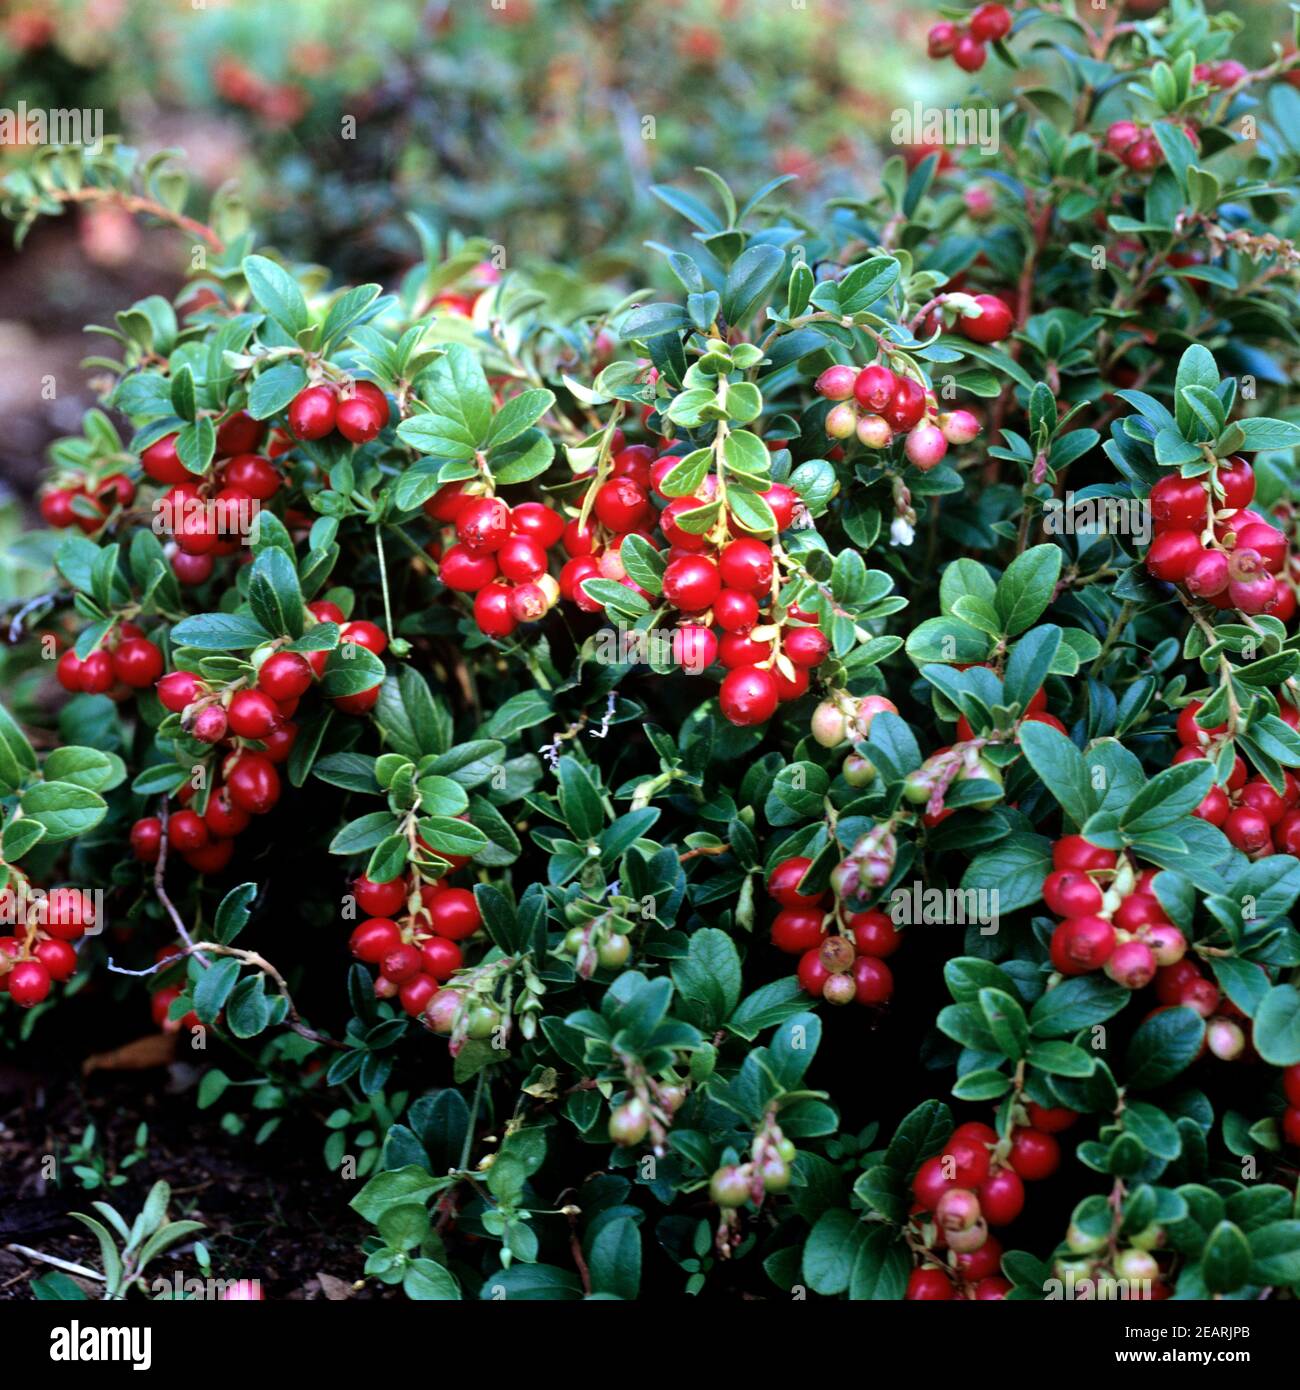 Preiselbeere, Vaccinium vitis-idaea, Bodendecker, Heilpflanzen, Fruechte, Obst, Stock Photo